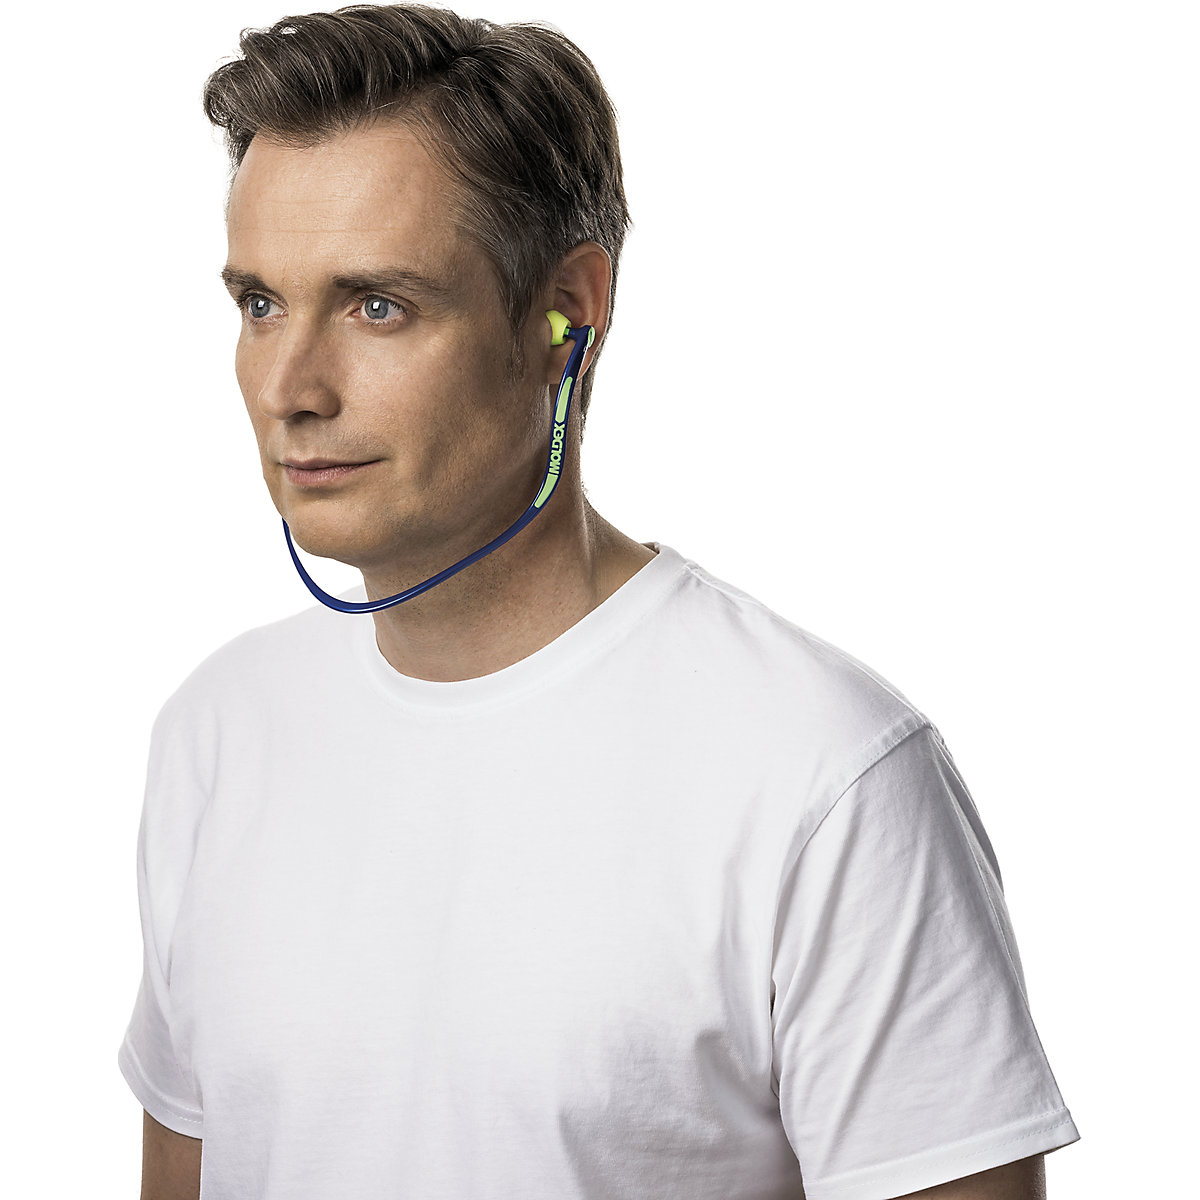 Zaščitni čepki za ušesa z lokom WaveBand® 2K – MOLDEX (Slika izdelka 4)-3